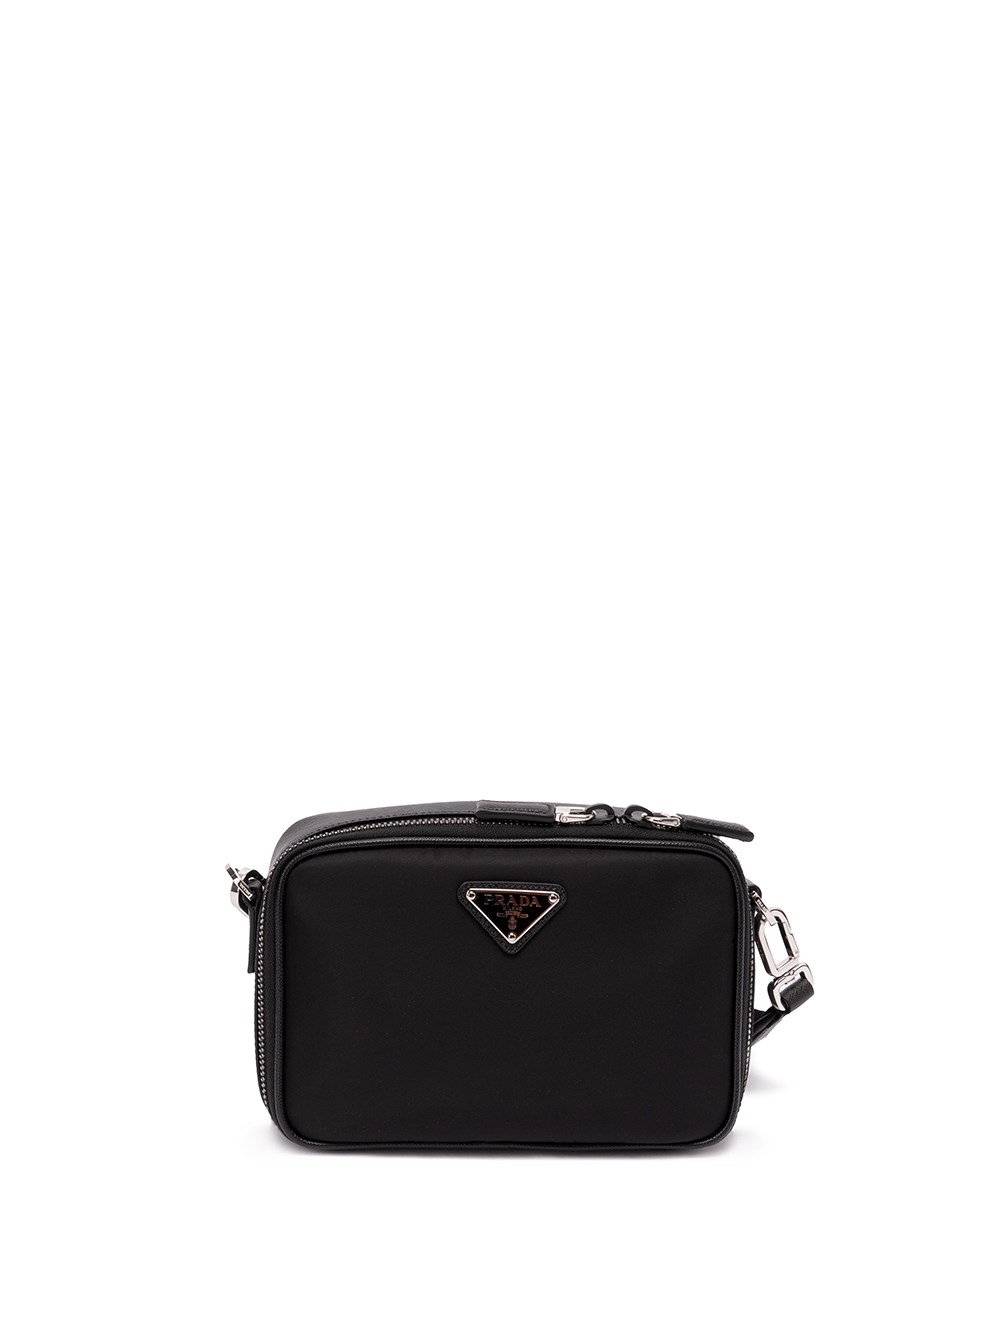 Prada Black Saffiano Leather Monochrome Camera Bag